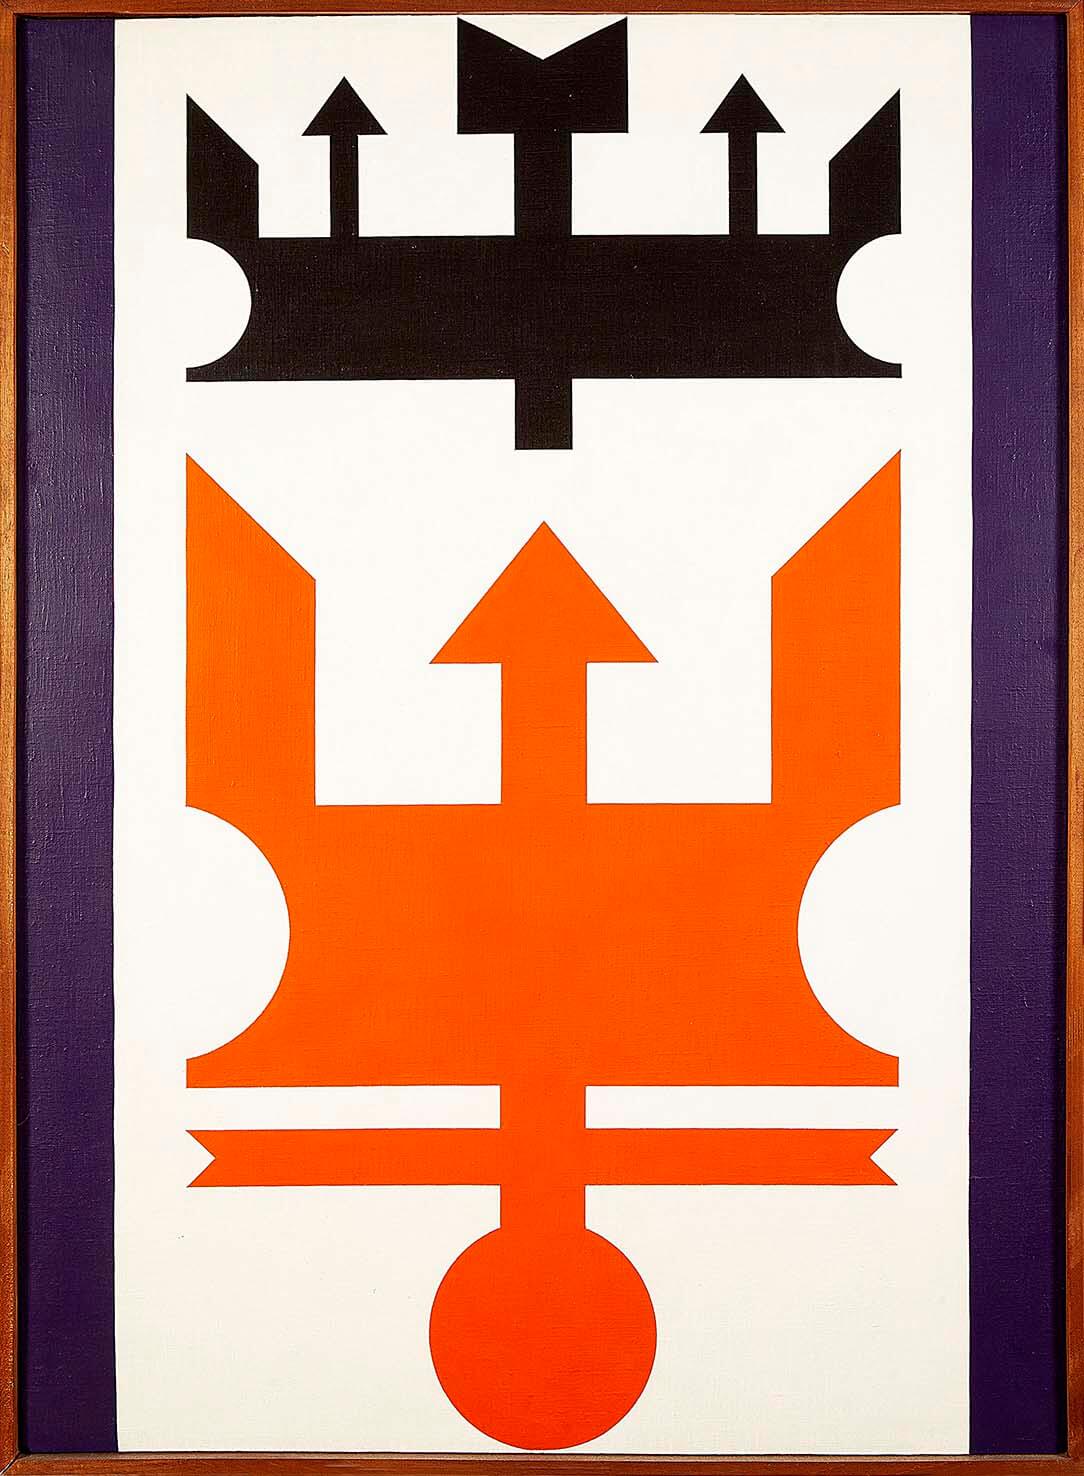 Autor: Rubem Valentim, Título: Emblema n° 10, Ano: 1976, Técnica: Acrílica sobre tela, Dimensões: 100 x 76 cm. Foto: Divulgação.